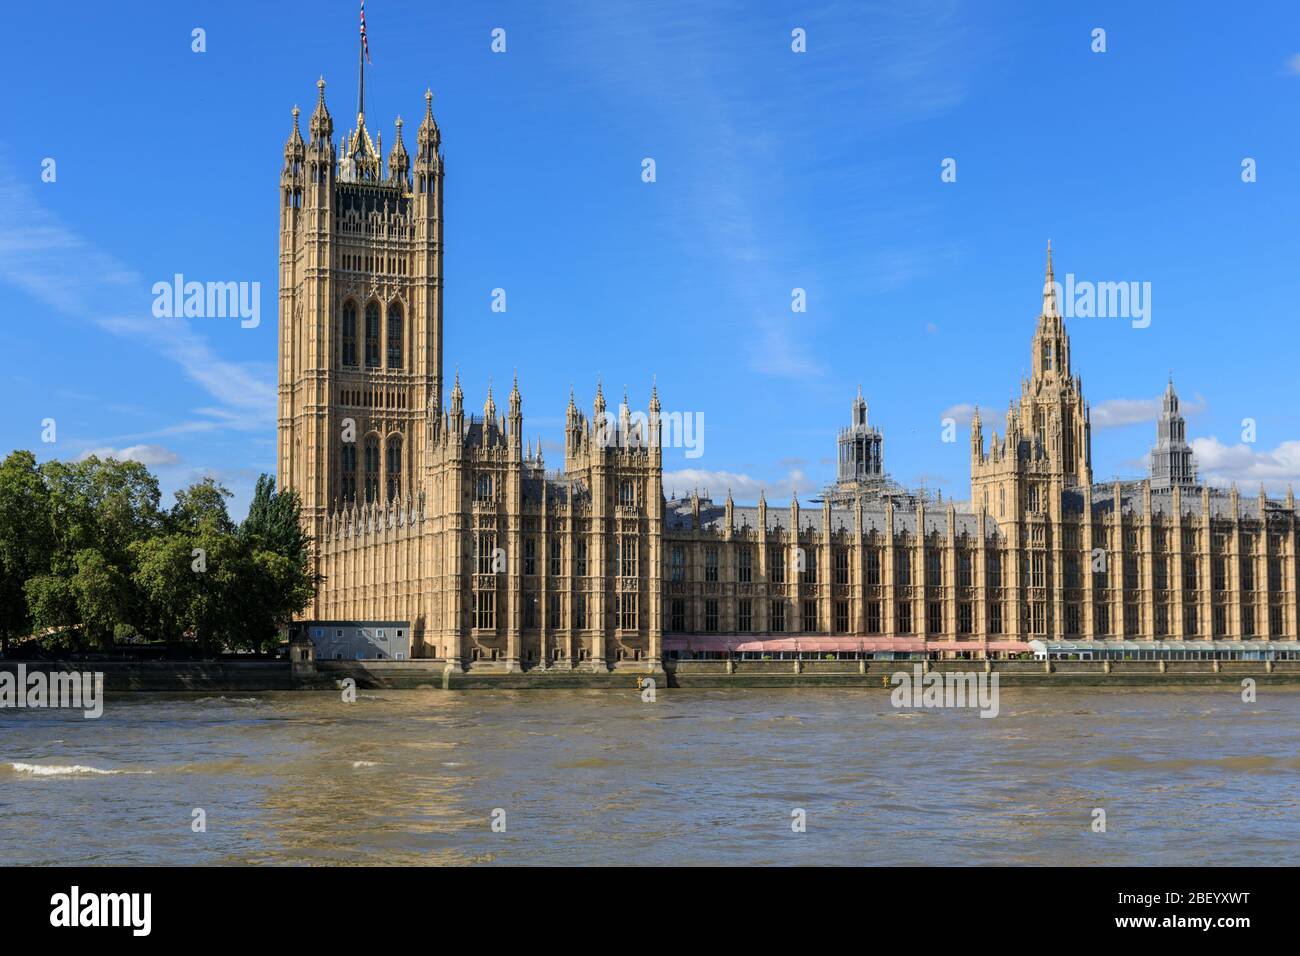 El Palacio de Westminster con el punto de referencia de la Torre Victoria y la Casa de los Lores, las Casas del Parlamento del Río Támesis, Londres, Reino Unido Foto de stock